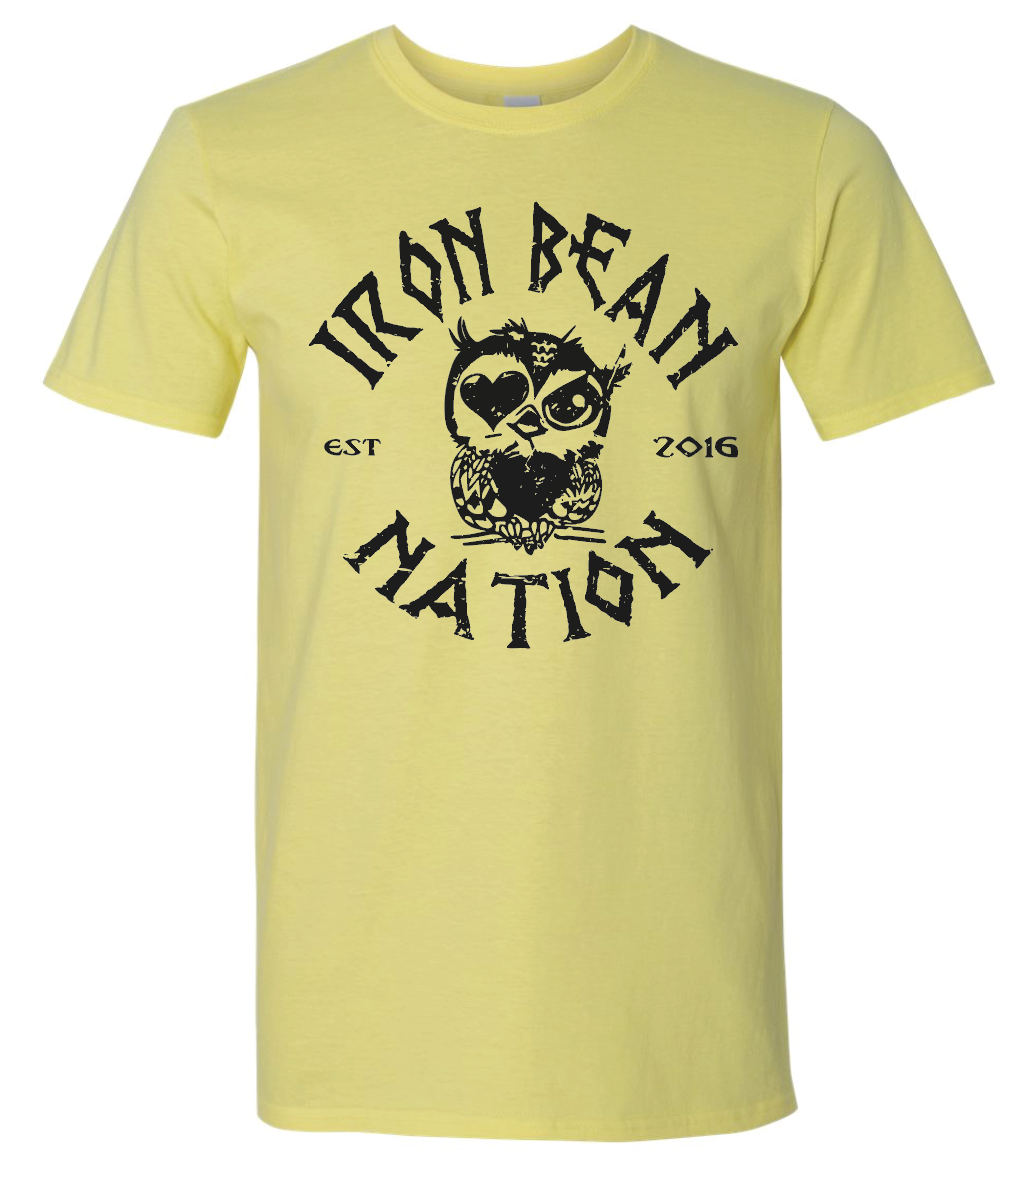 IRON BEAN NATION TEE's - Crew Necks